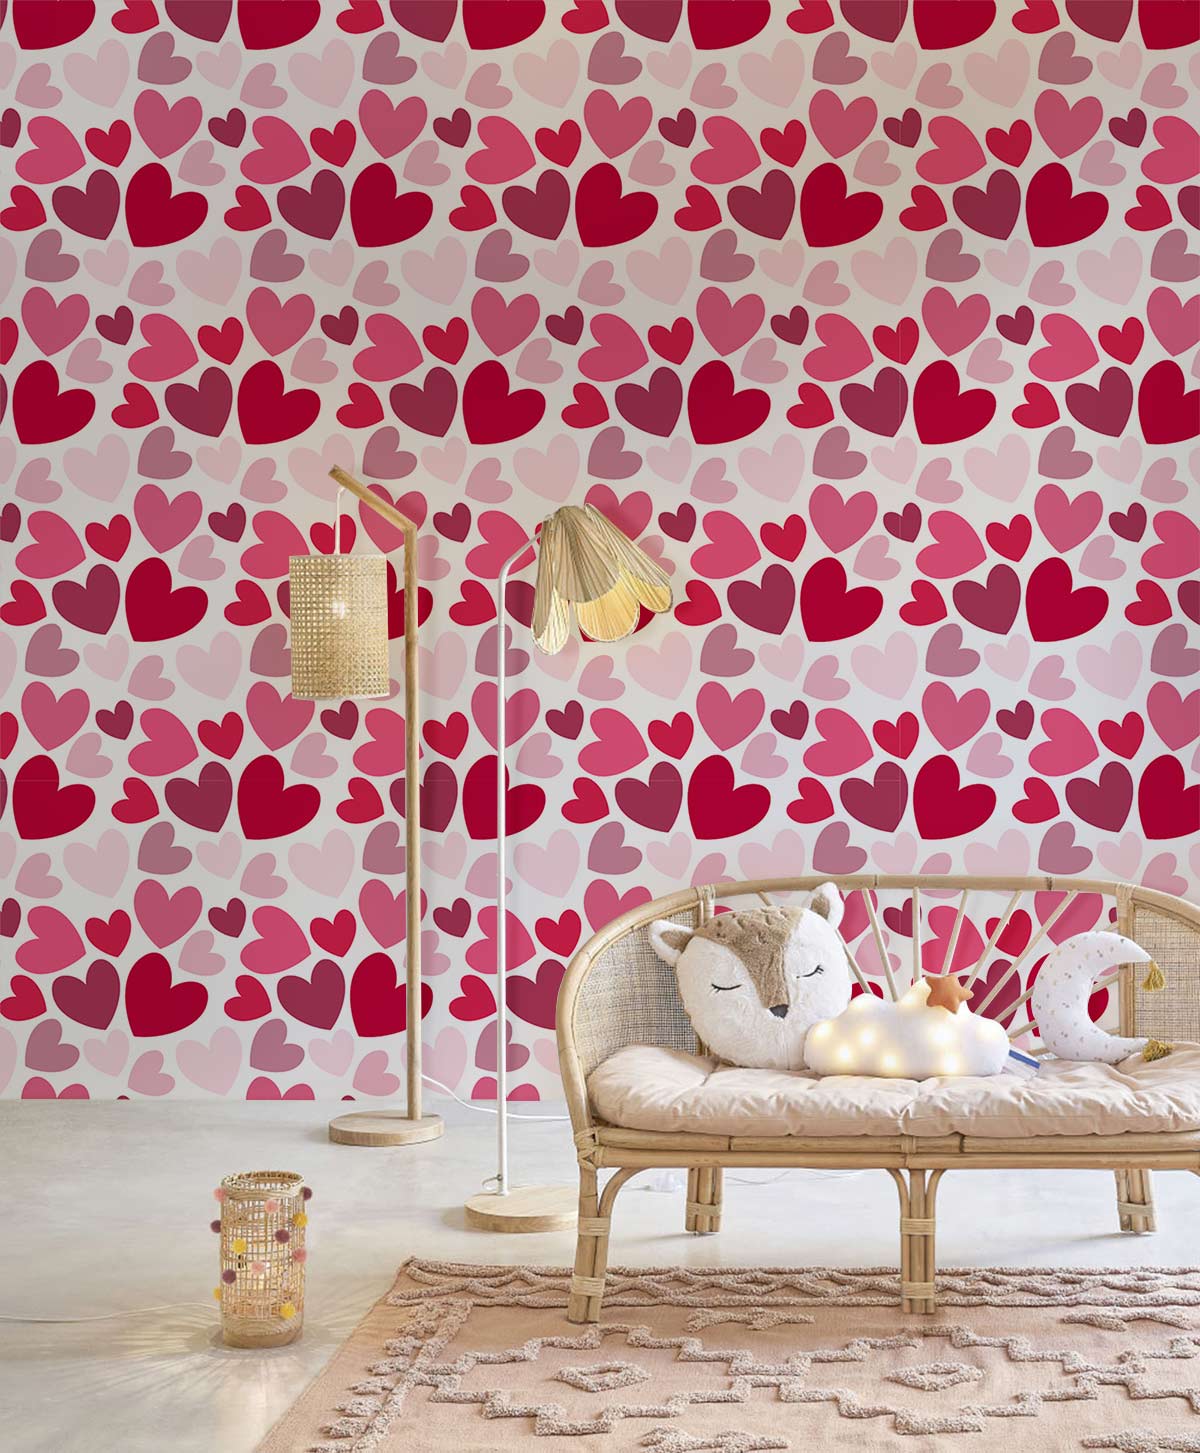 Multiple Loves repeated Pattern Wallpaper Mural for living Room